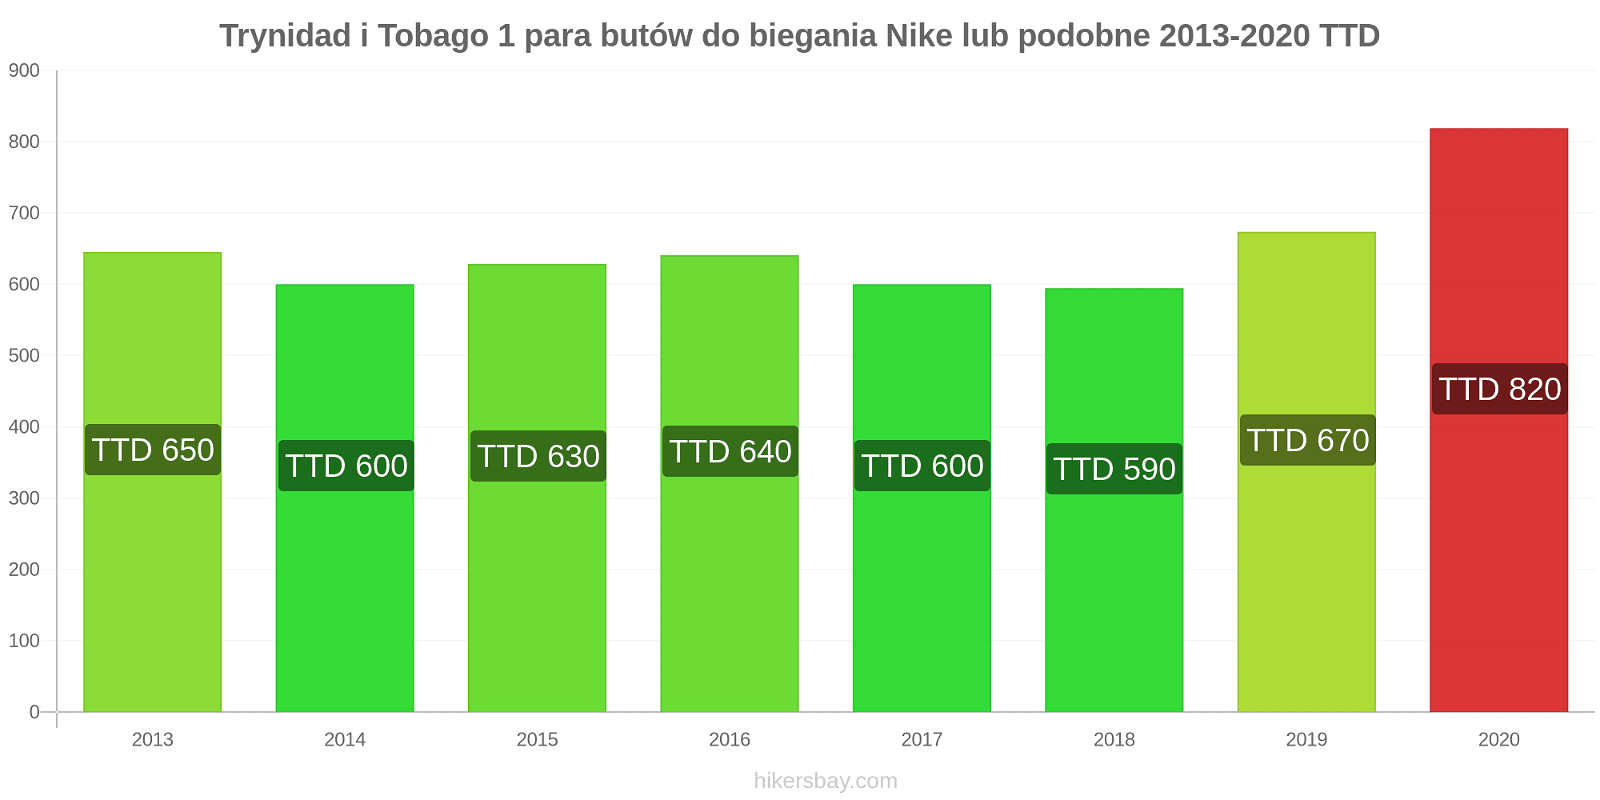 Trynidad i Tobago zmiany cen 1 para butów do biegania Nike lub podobne hikersbay.com